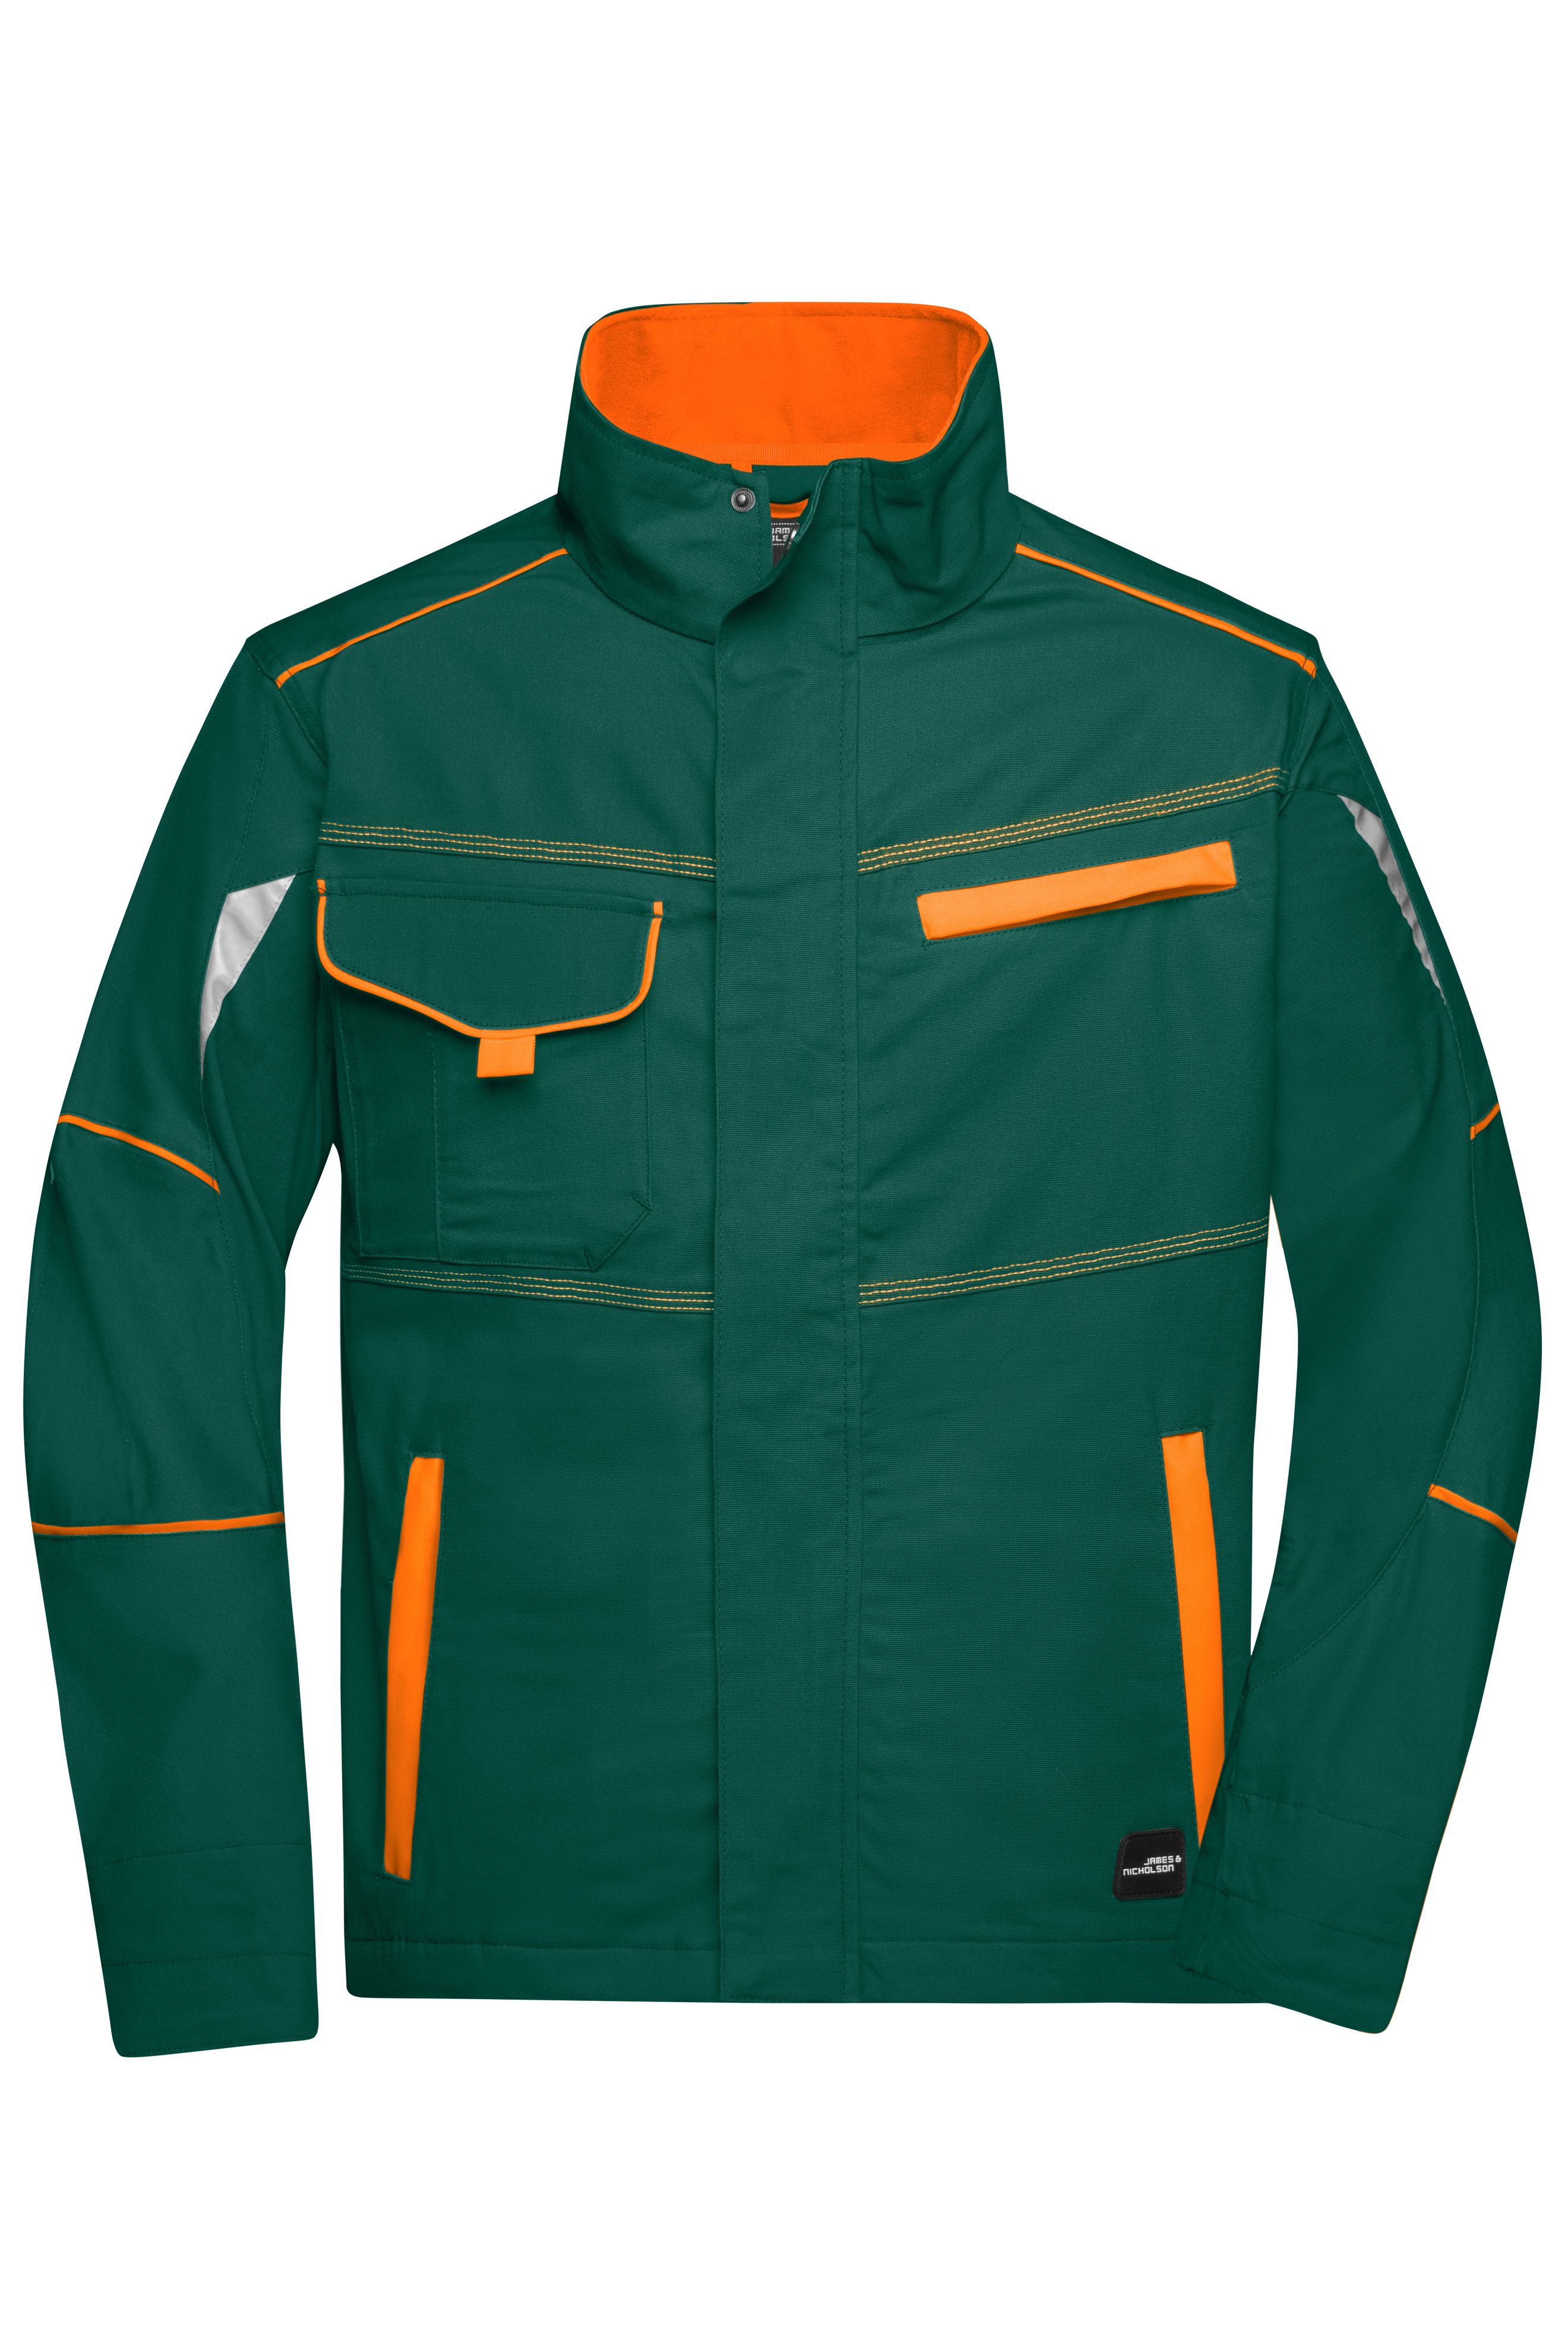 Workwear Jacket - COLOR - JN849 Funktionelle Jacke im sportlichen Look mit hochwertigen Details